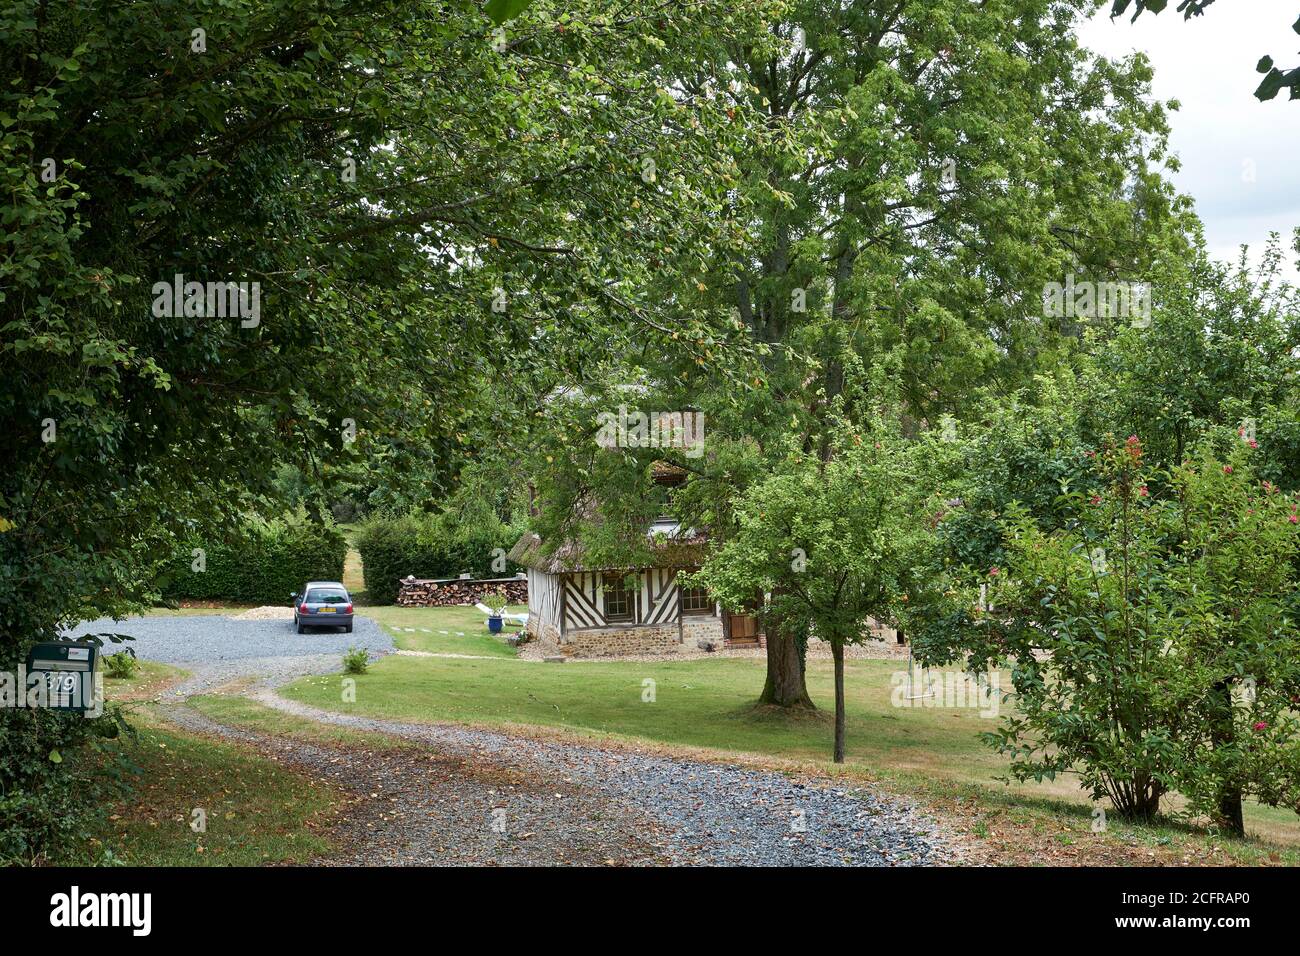 Pfad und Auffahrt flankiert von Bäumen, die zu einem Fachwerk führen Freistehendes normannisches Grundstück mit geparktem Auto Stockfoto